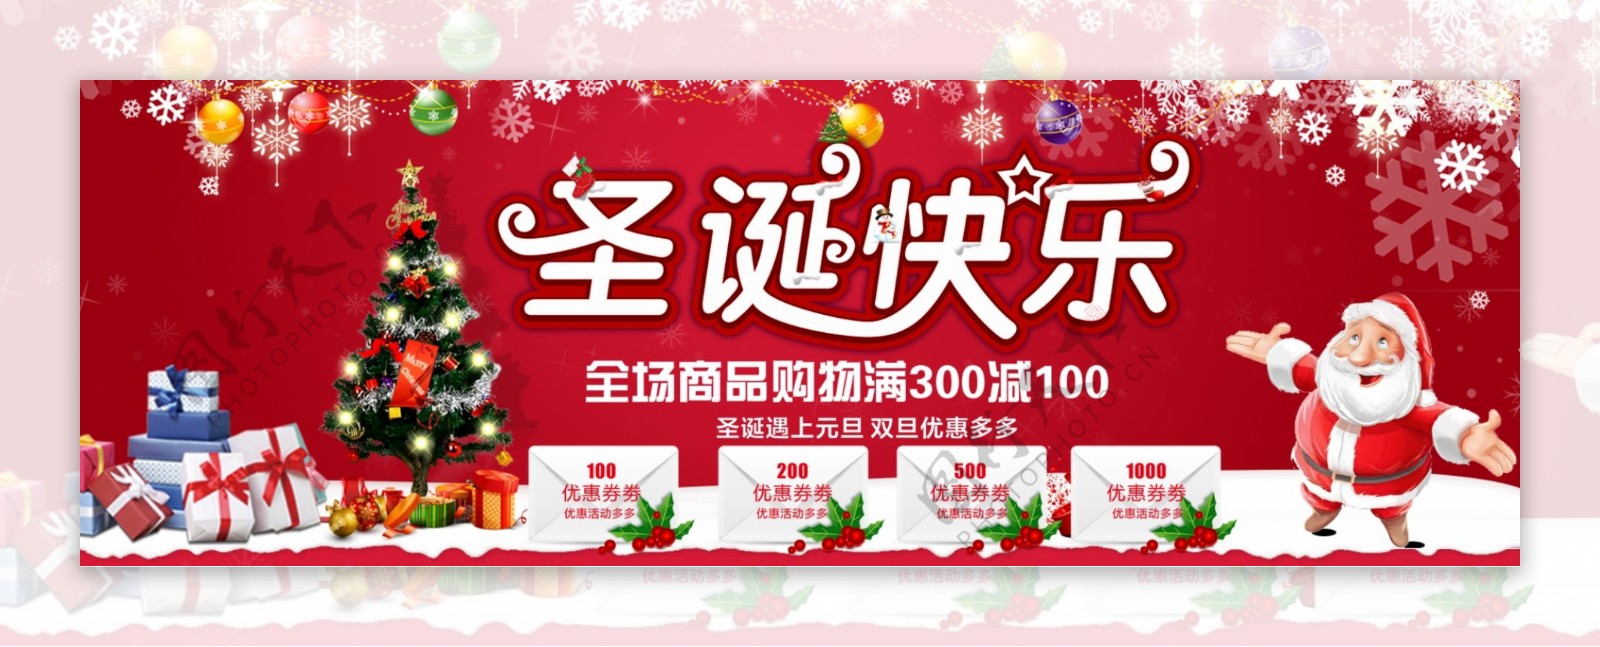 红色简约节日圣诞快乐电商banner淘宝